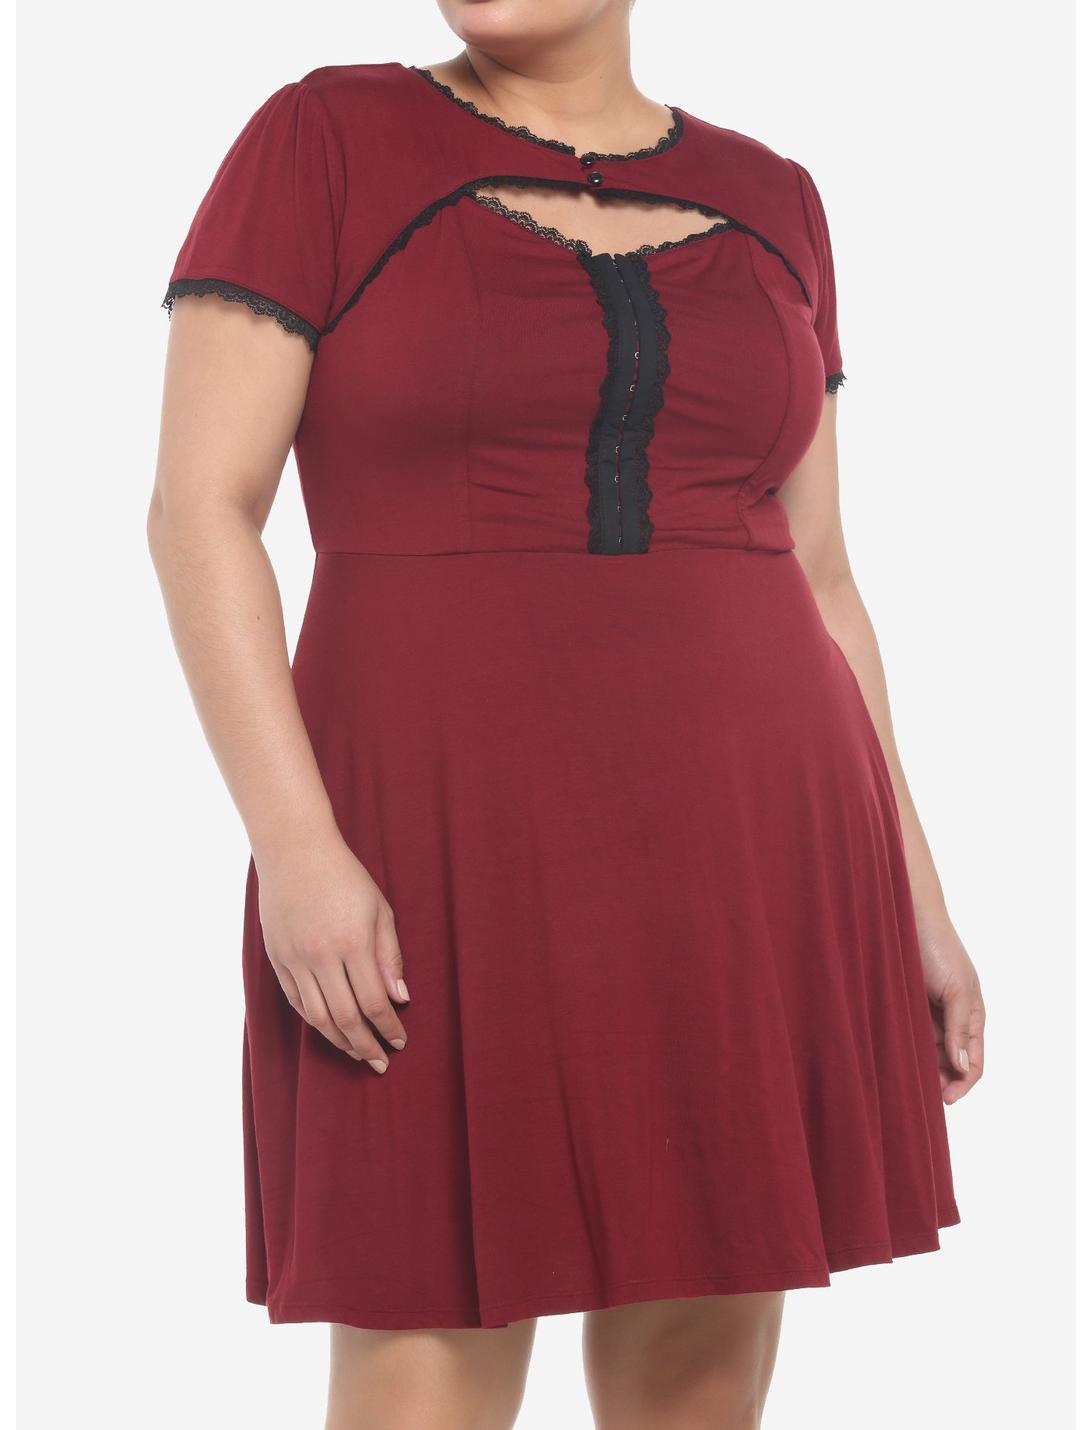 Cabernet Cutout Lace Dress Plus Size, CABERNET, hi-res